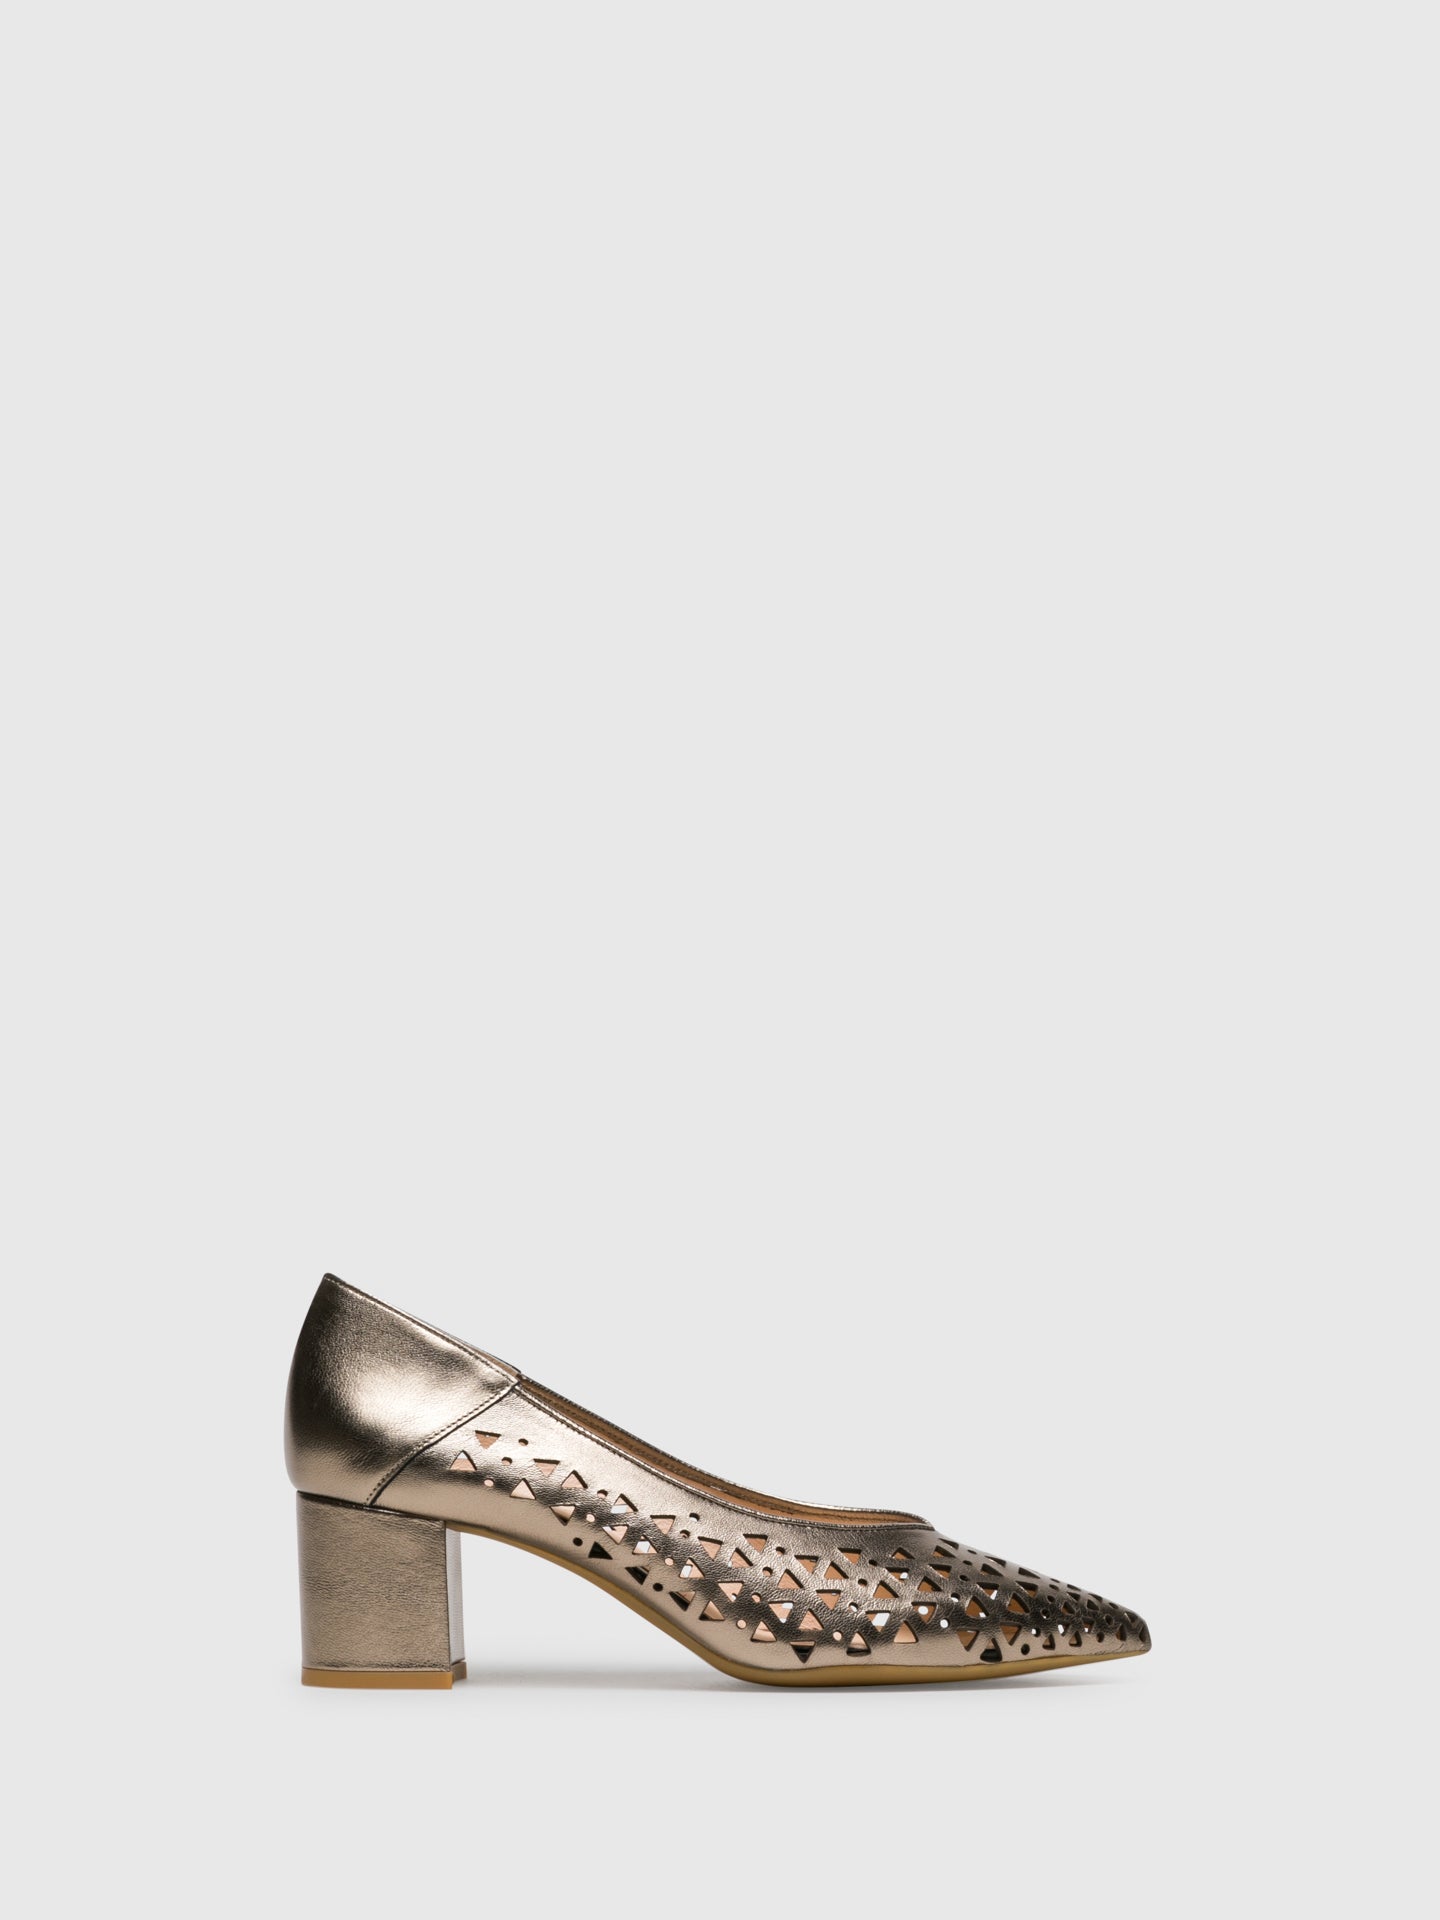 Sofia Costa Sapatos de Salto Grosso em Dourado